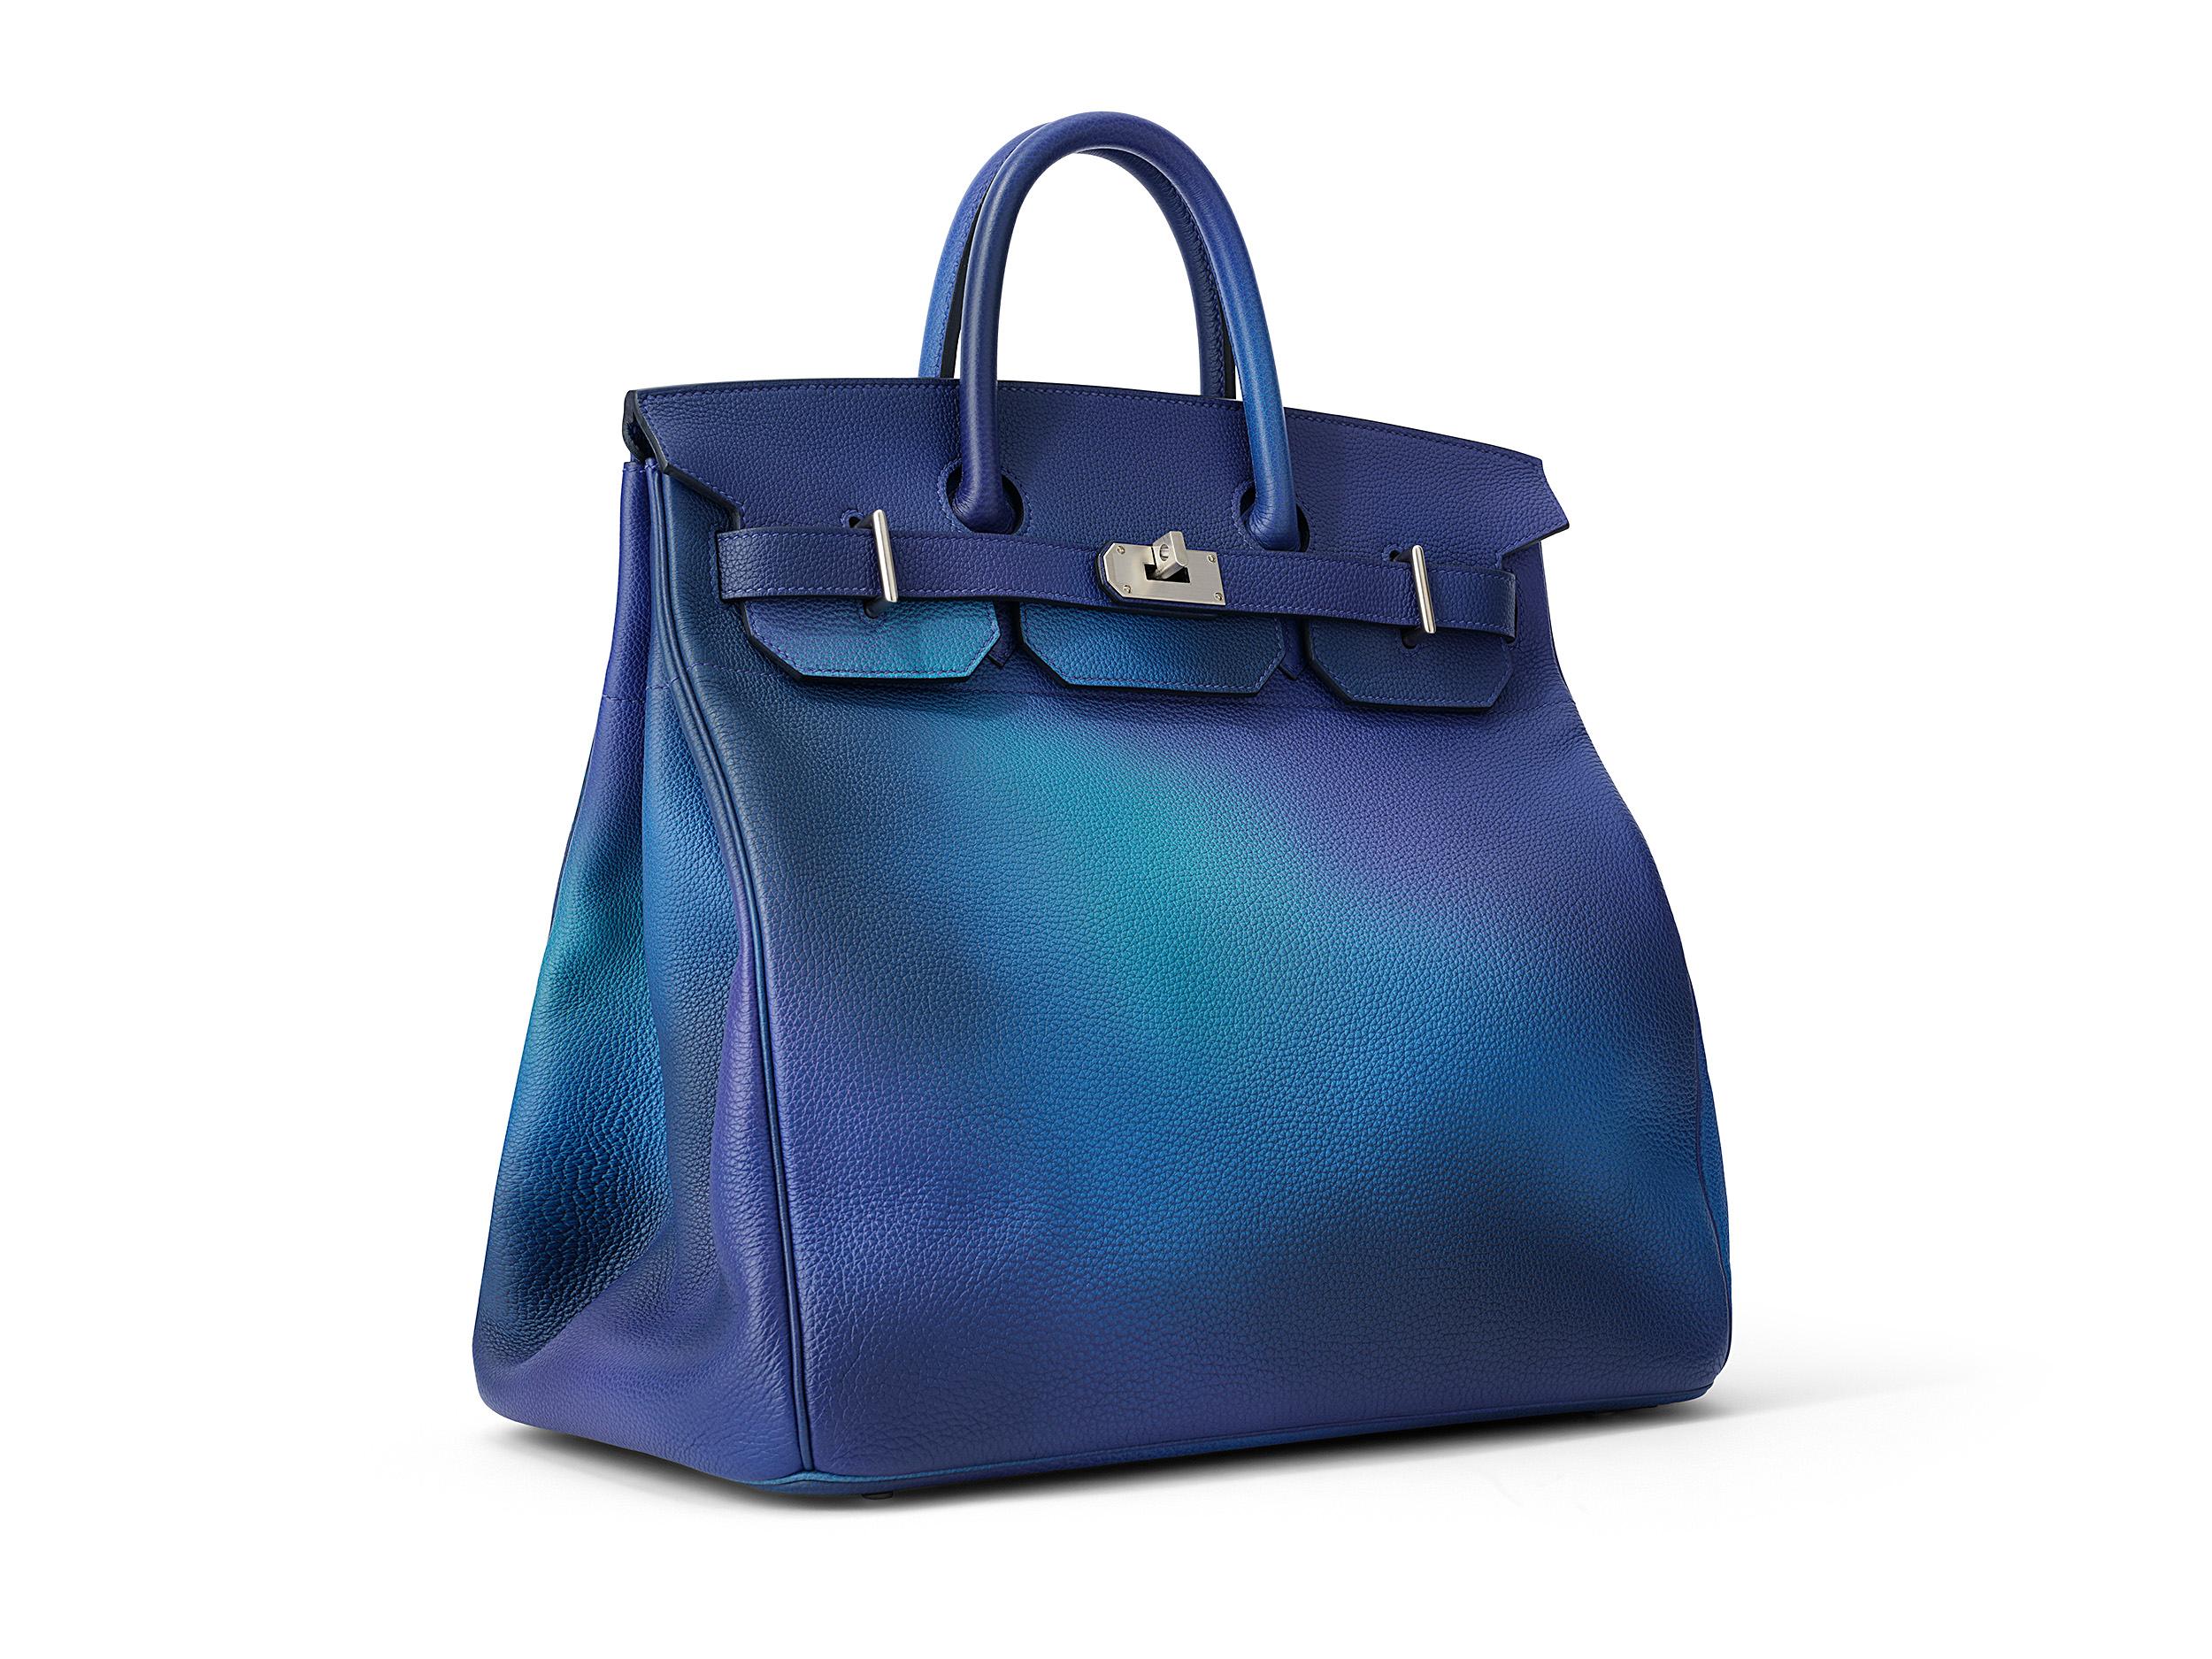 Birkin HAC Cosmos 40 d'Hermès, en cuir bleu nuit et togo, avec accessoires en palladium. Le sac n'a pas été porté et est livré dans son intégralité, avec le reçu original.  Timbre Y (2020) 

